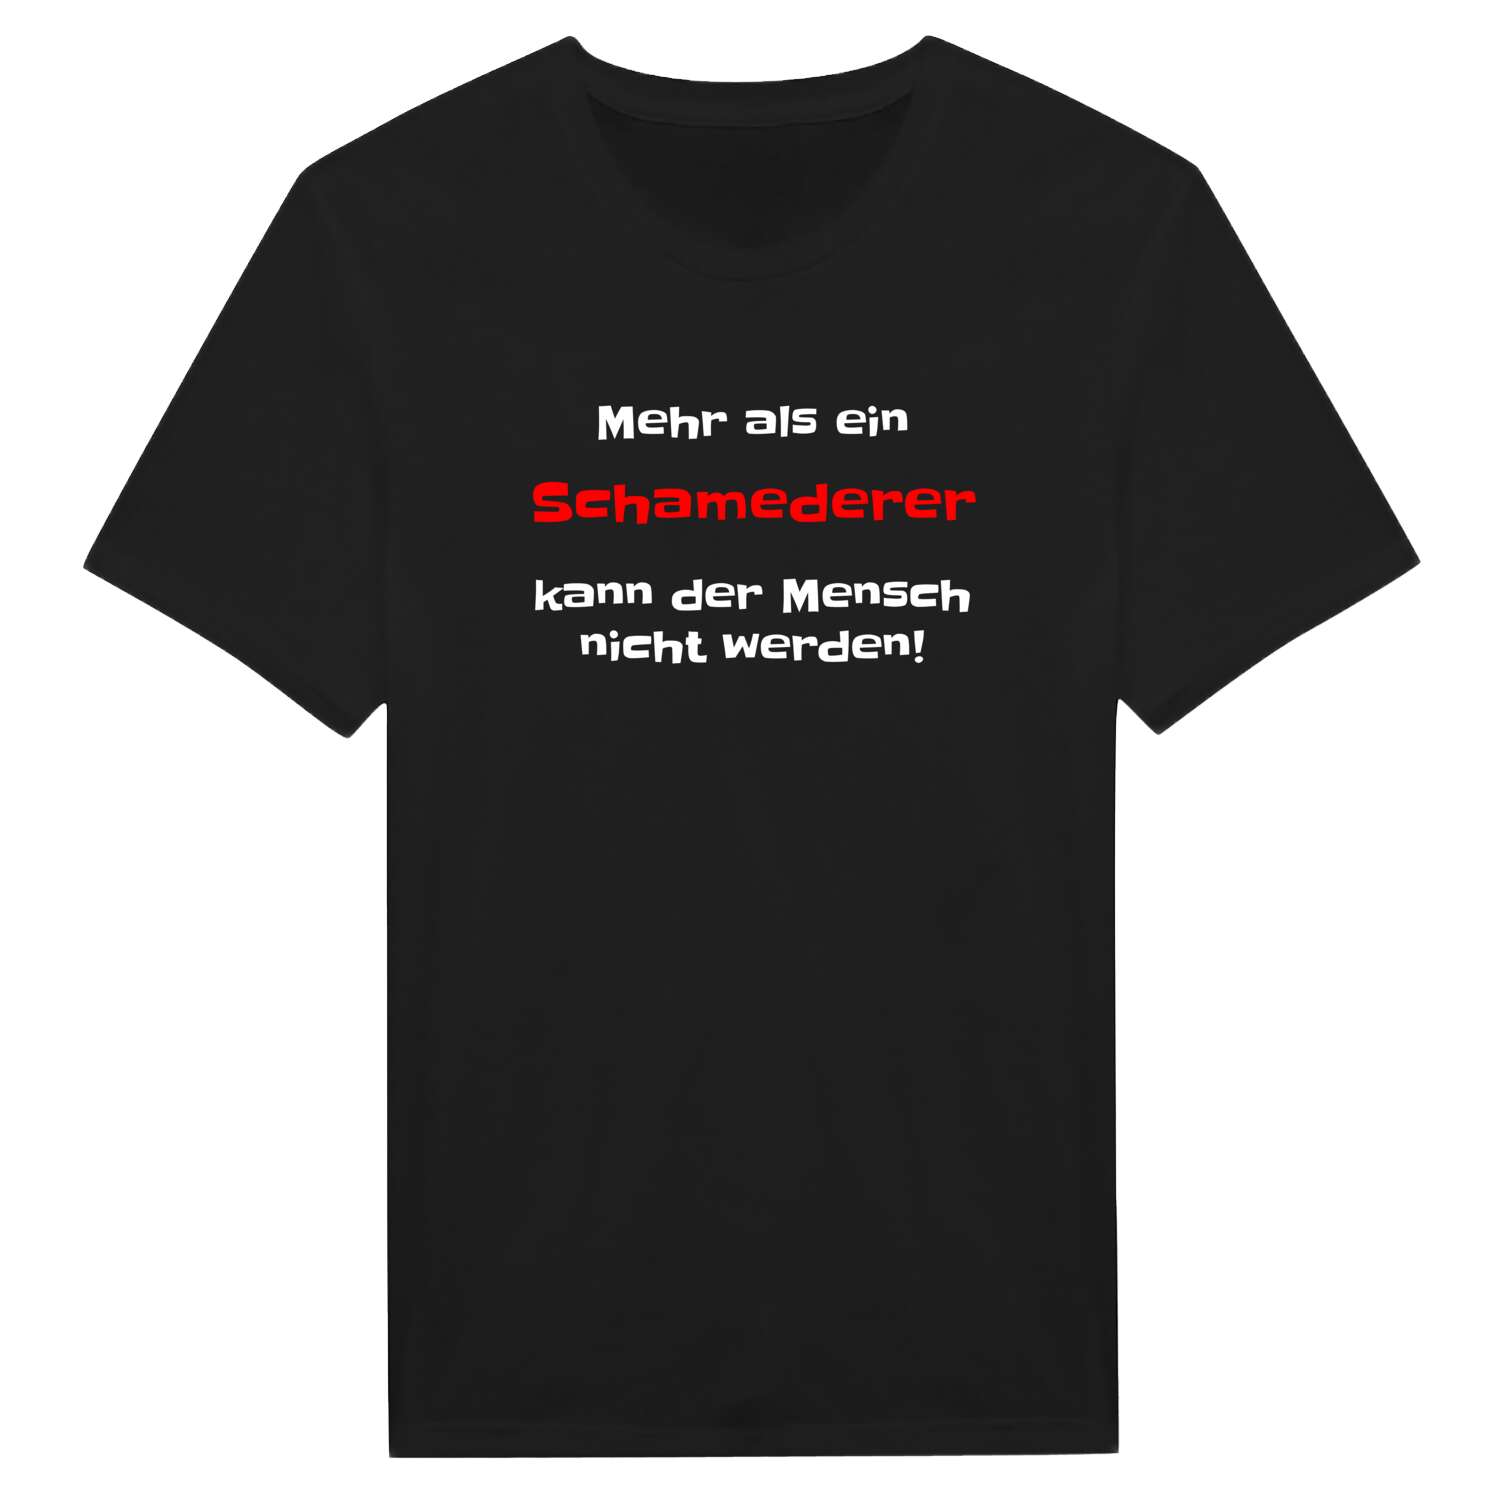 Schameder T-Shirt »Mehr als ein«